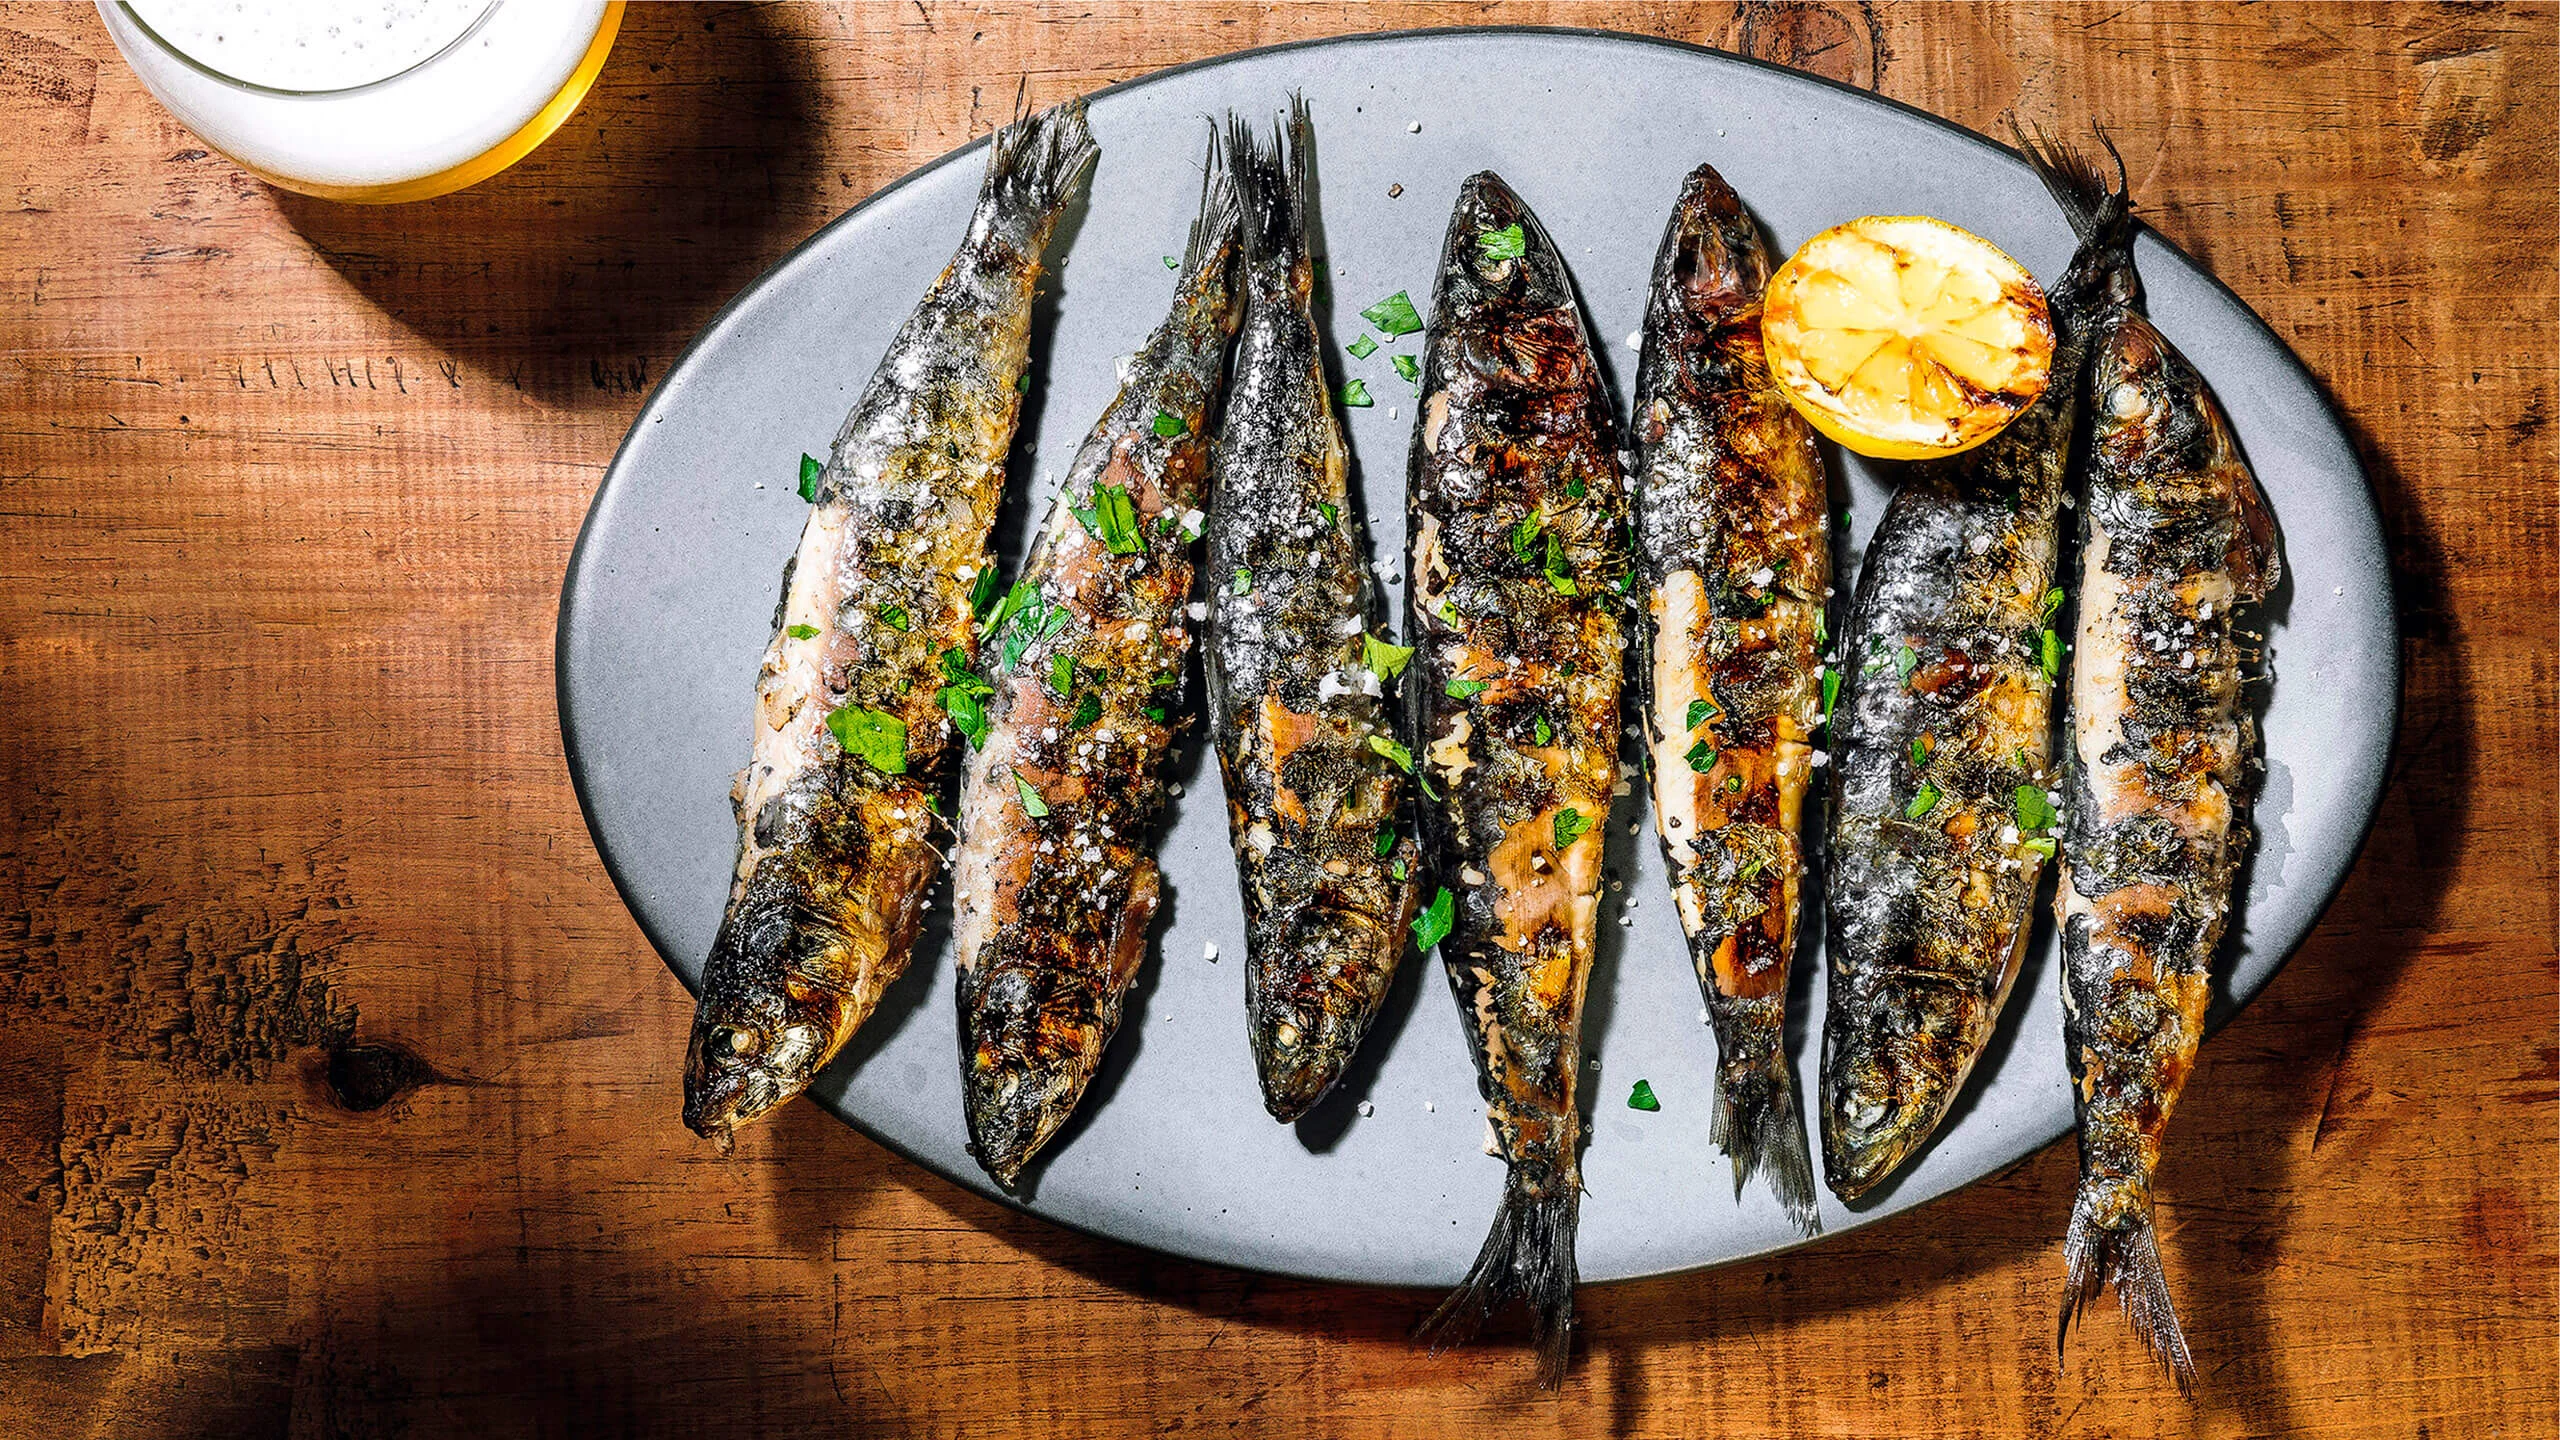 Comer sardinas tiene más beneficios de los que imaginas